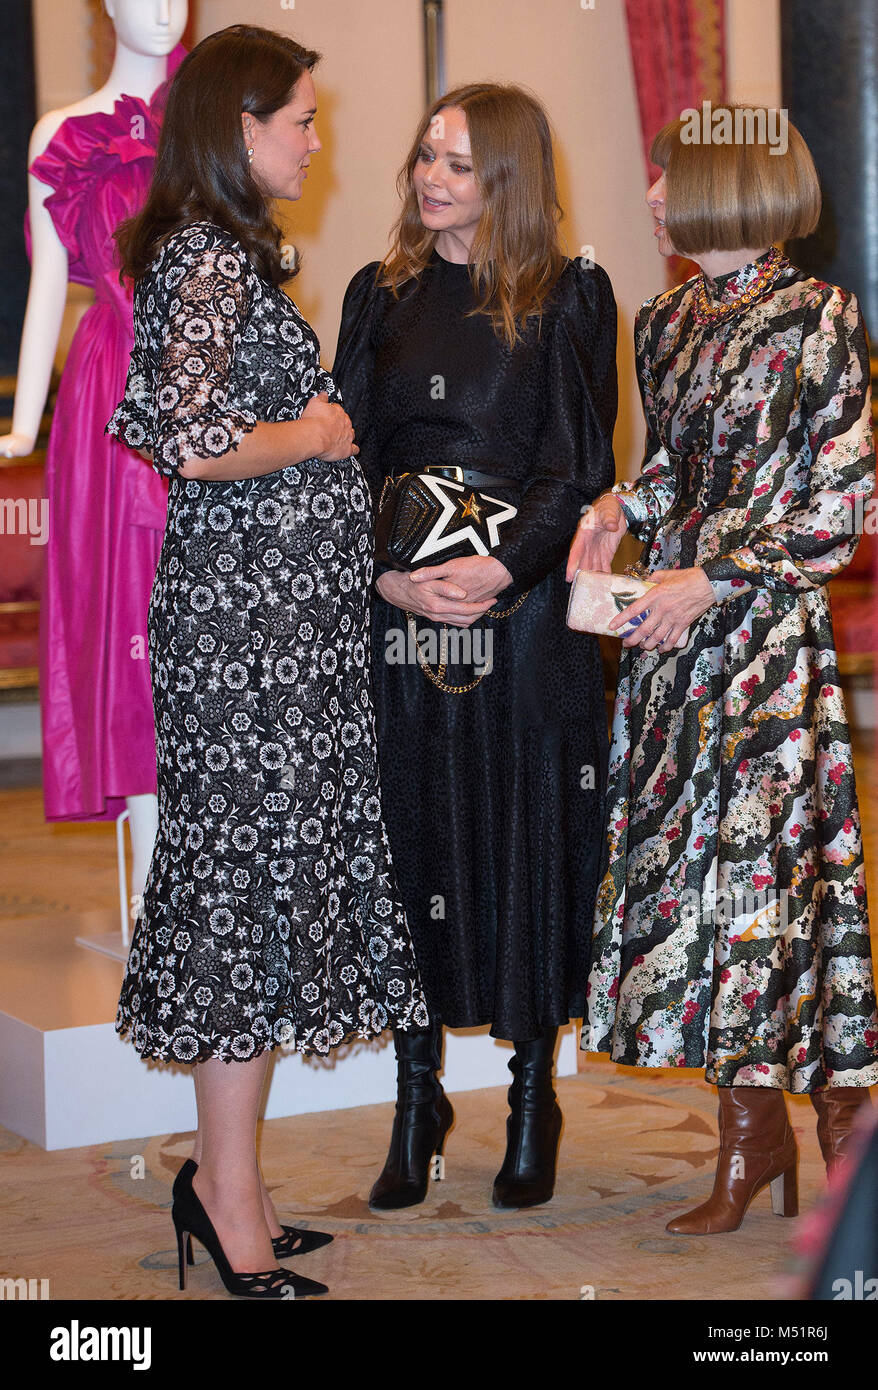 La duchesse de Cambridge avec designer Stella McCartney (centre) et Conde Nast Directeur Artistique Anna Wintour (à droite) lors d'une réception pour célébrer l'échange de la mode du Commonwealth au palais de Buckingham à Londres. Banque D'Images